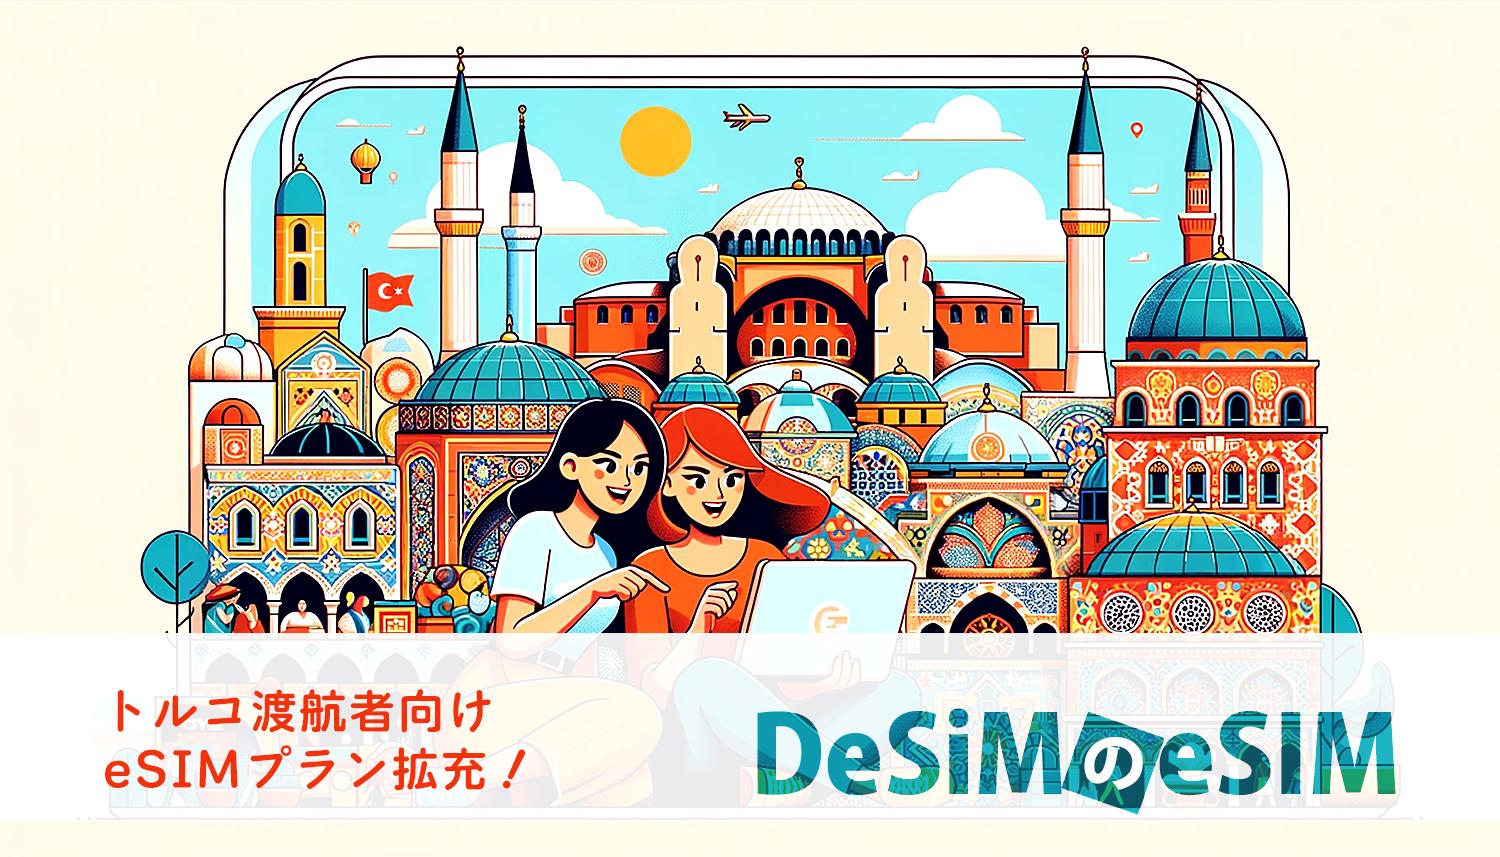 速報JAPAN株式会社、「DeSiM」がトルコ渡航者向けeSIMプランを新たに拡張！合計7種類のデータプランを提供開始